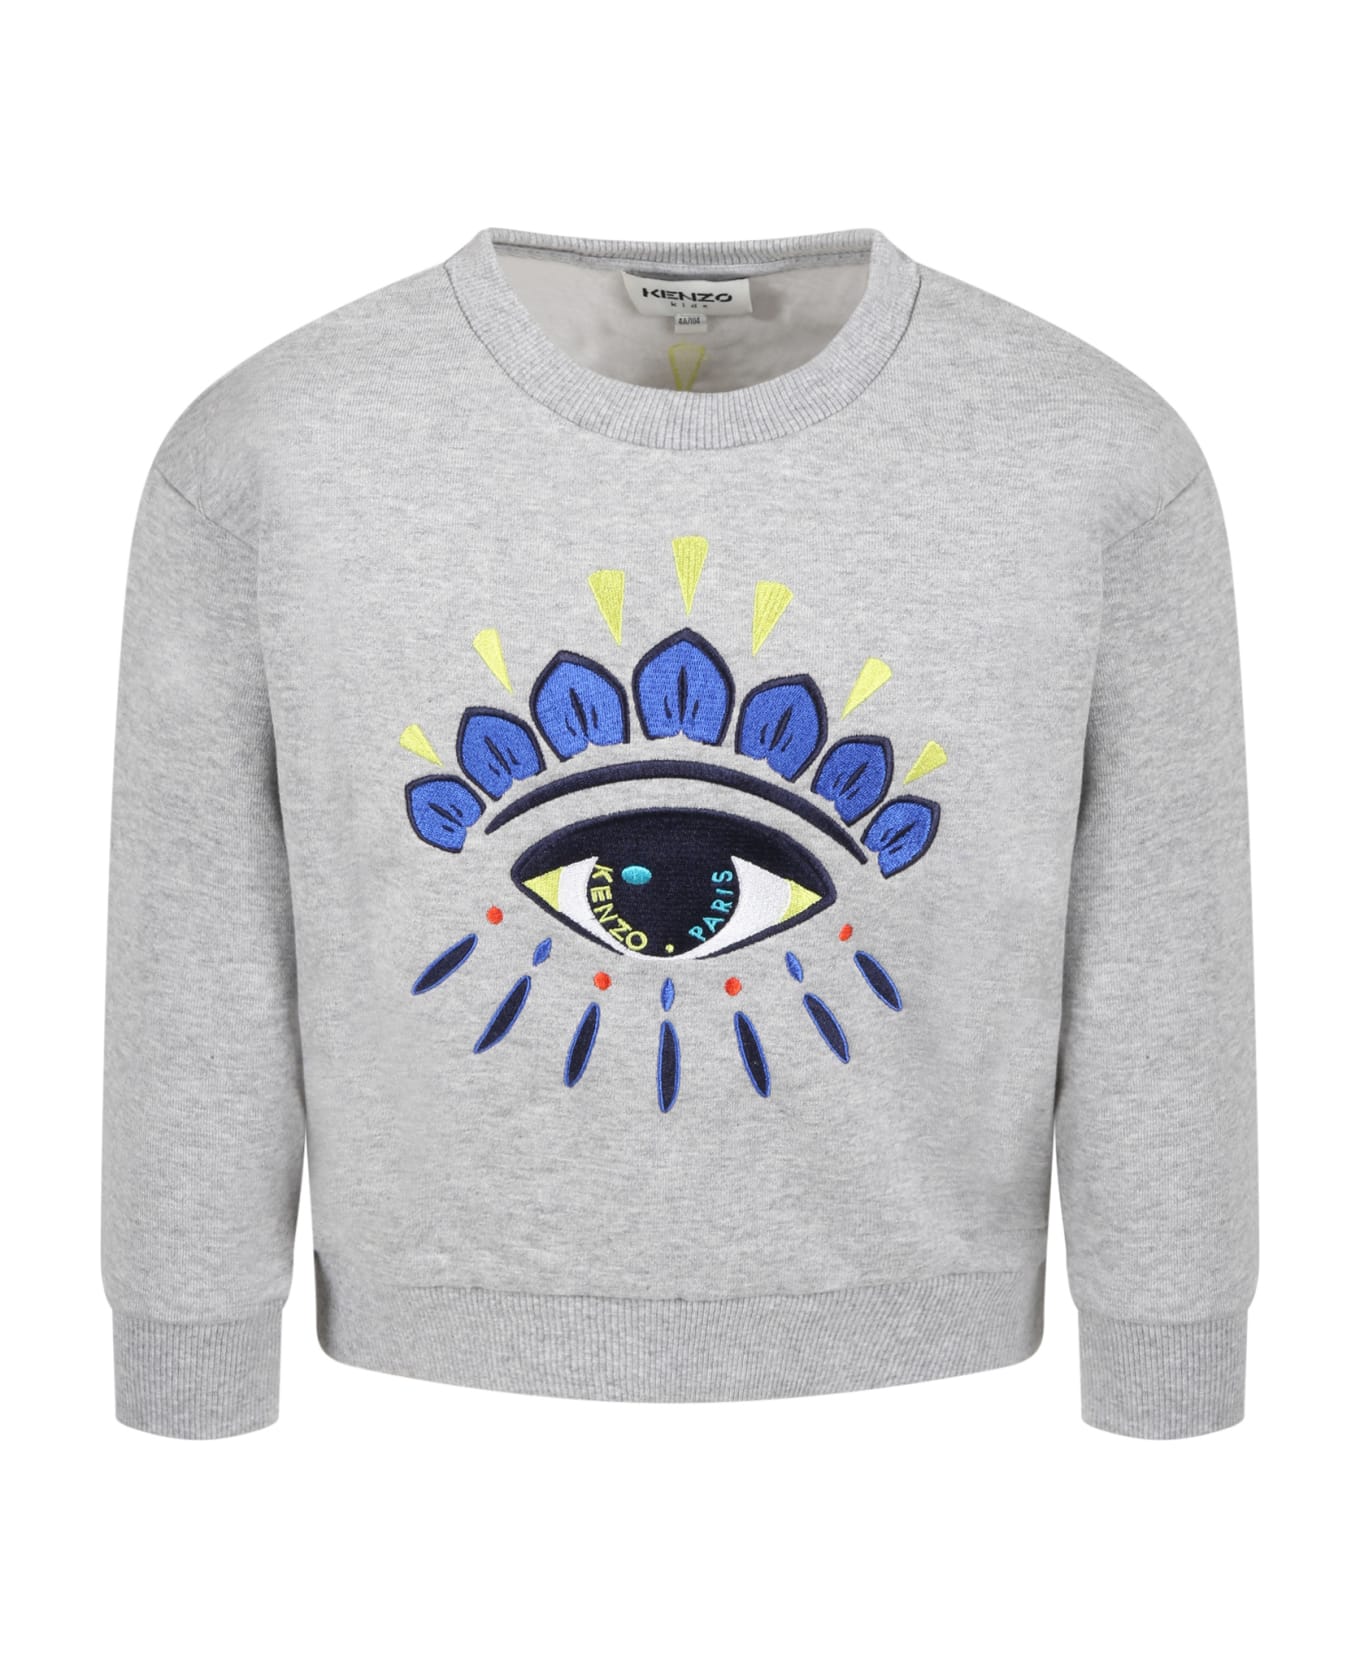 Kenzo Kids Grey Sweatshirt For Boy With Iconic Eye - Grey